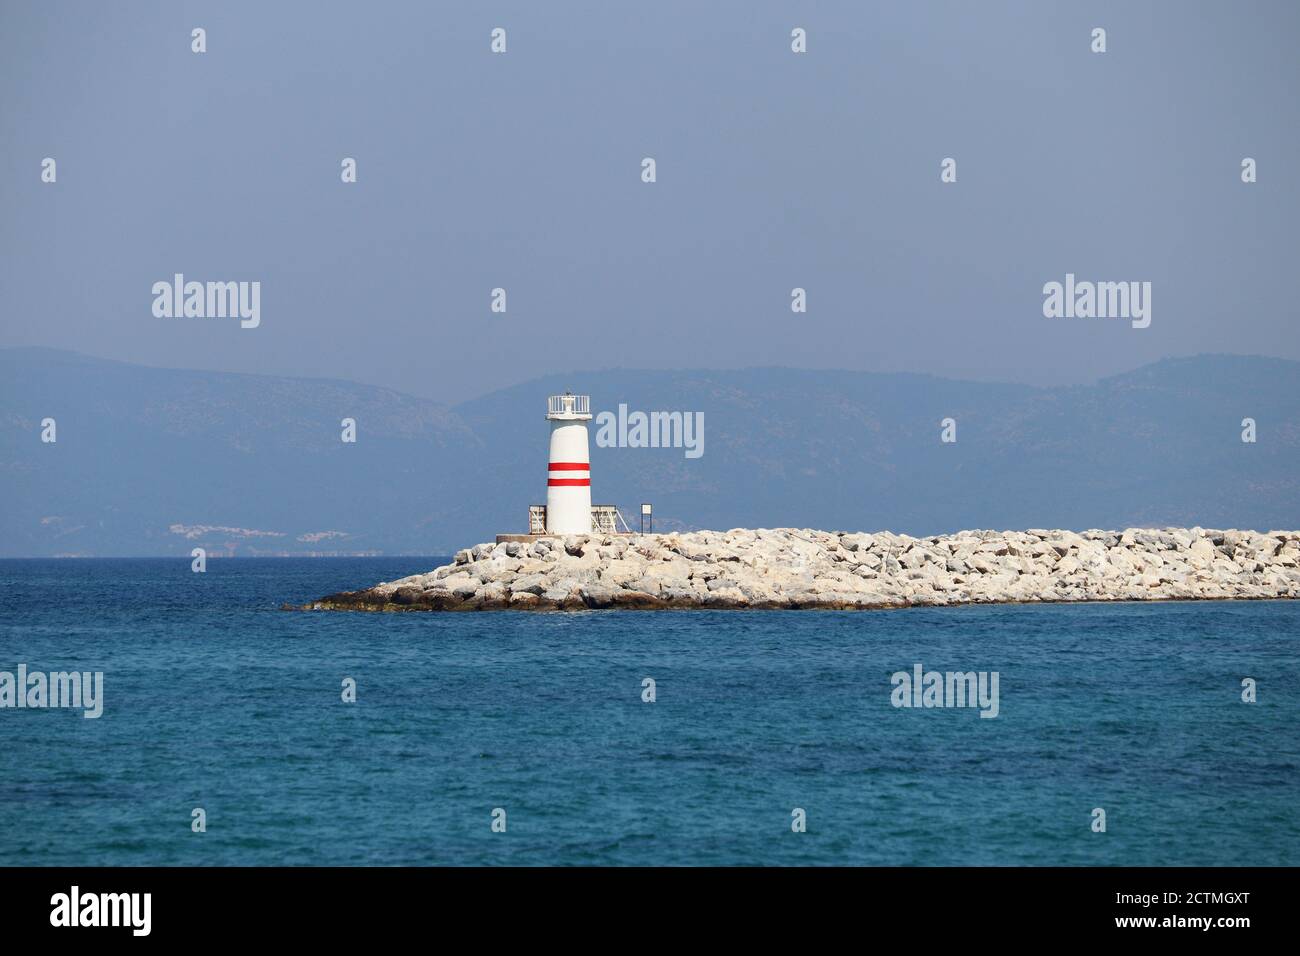 Tour de phare sur un quai en pierre dans la mer d'azur contre montagnes brumeuses Banque D'Images